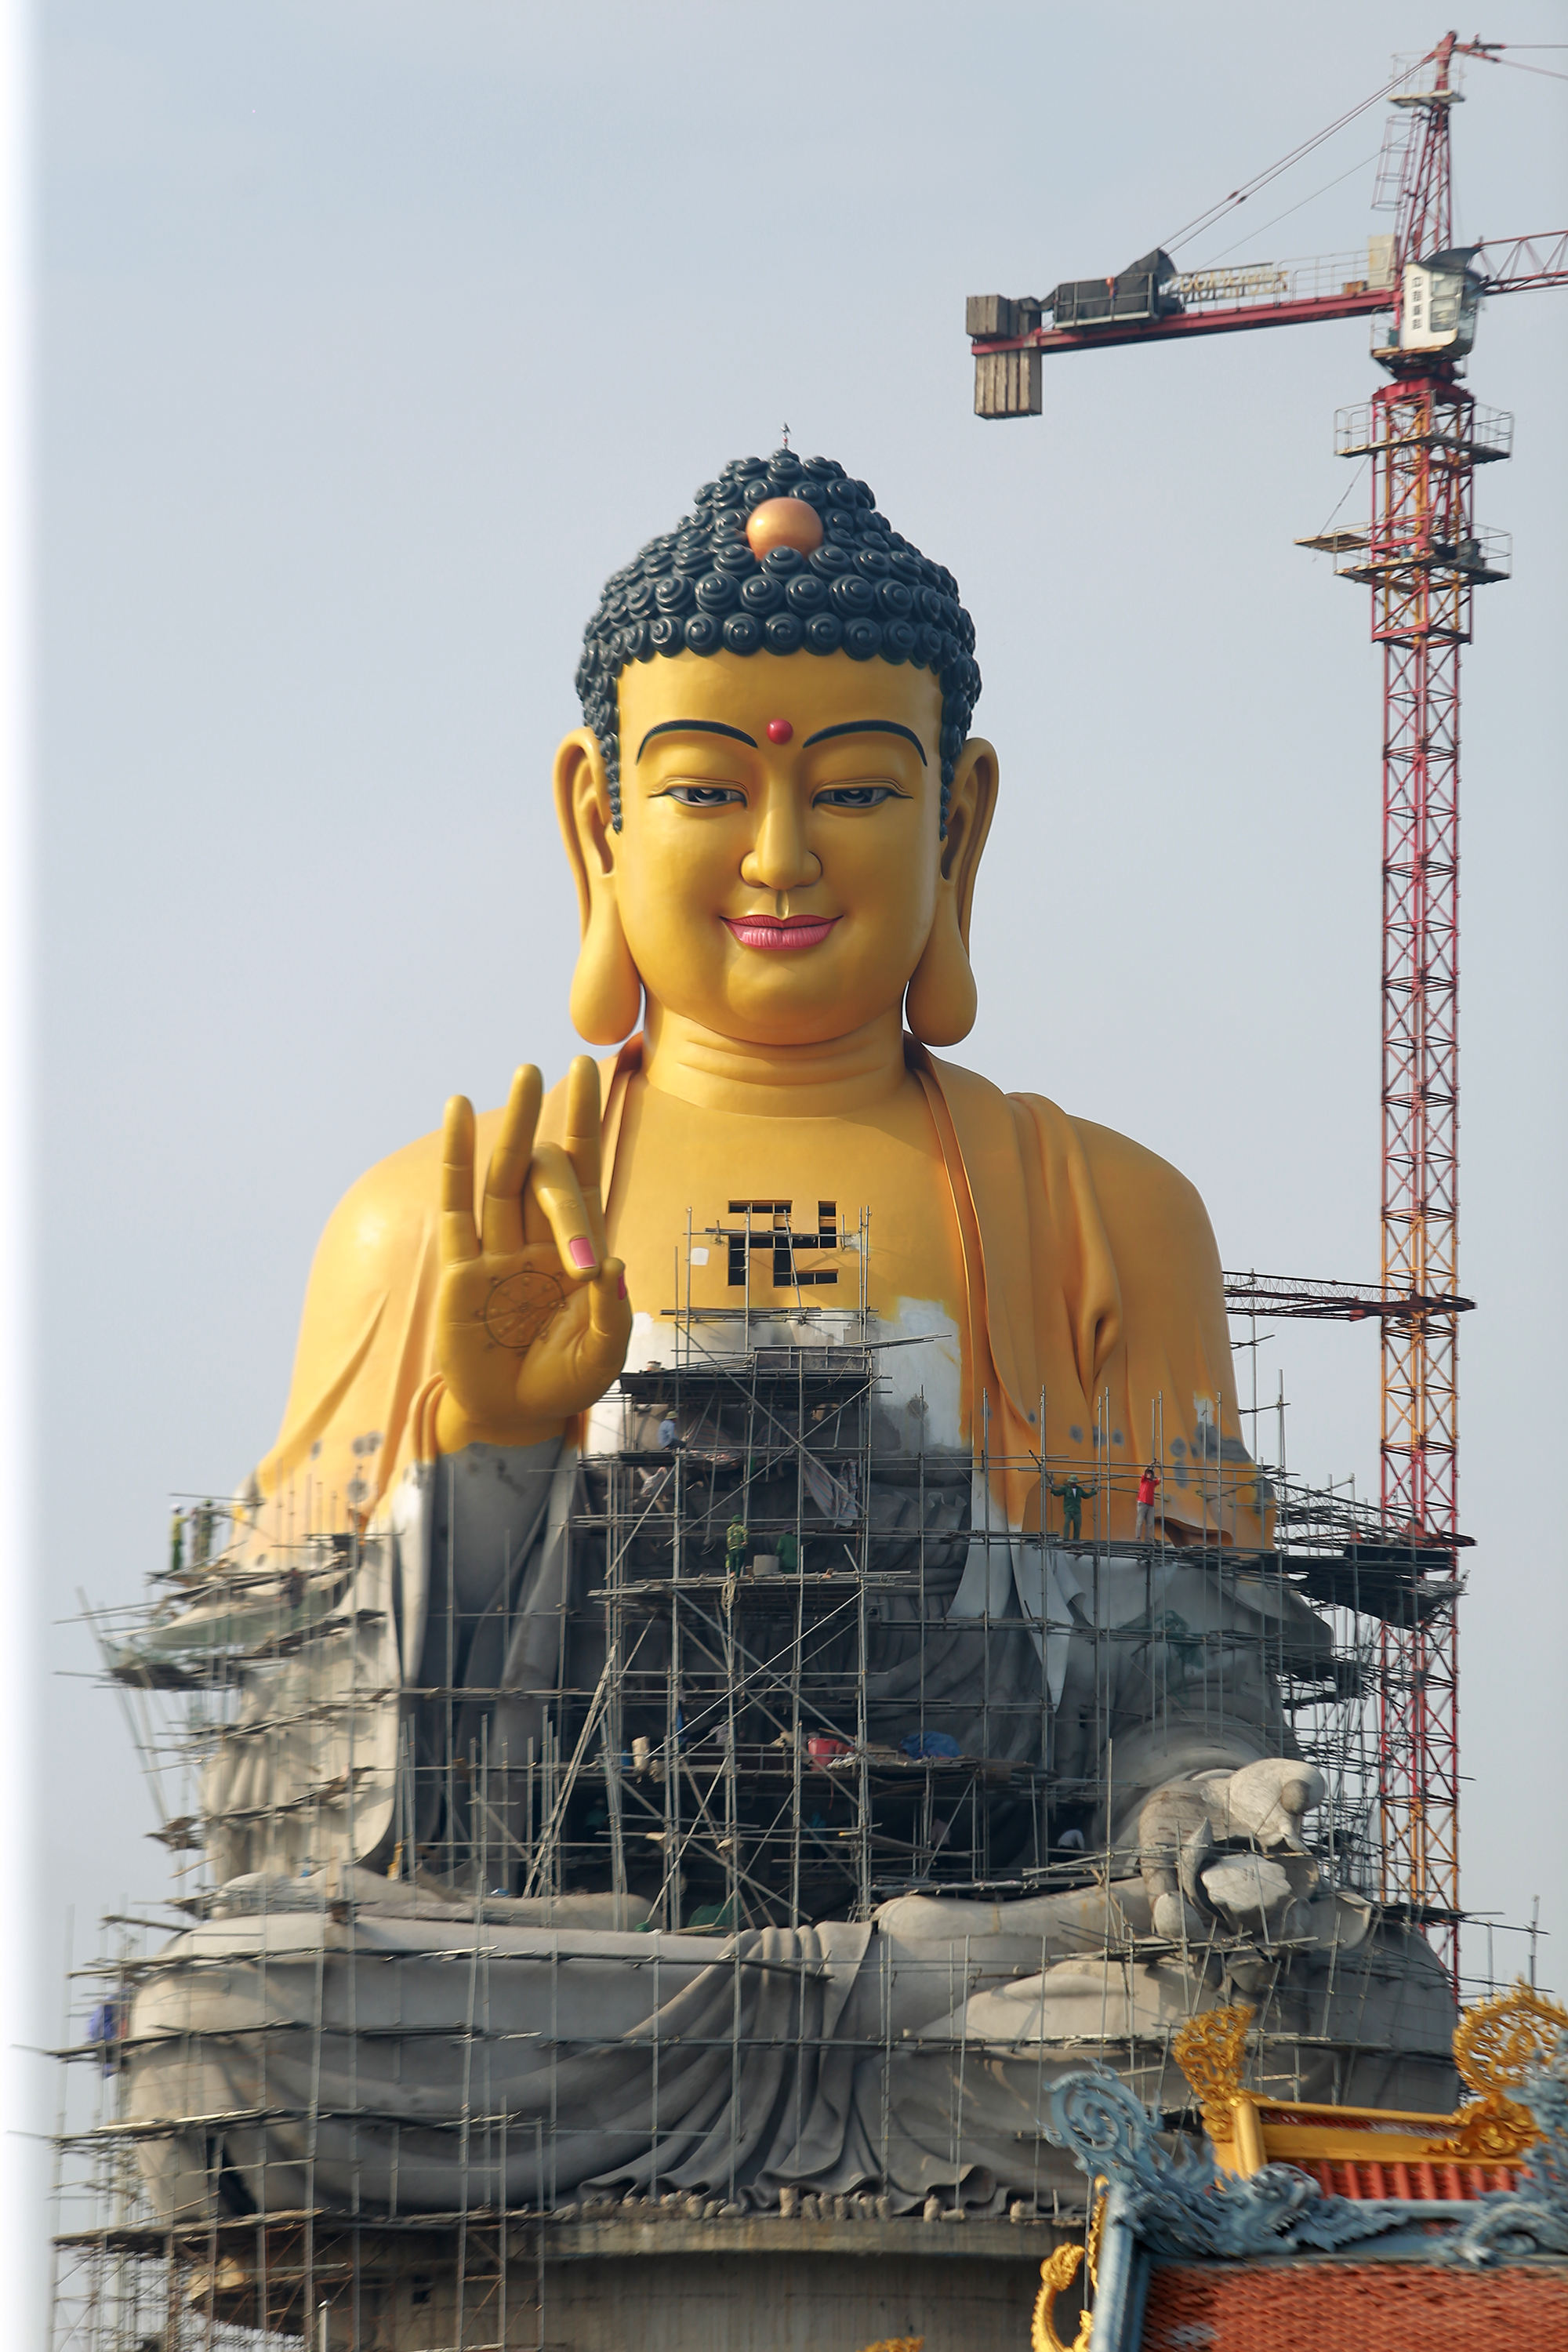 Tượng Phật A Di Đà: Những tượng Phật đem đến niềm tin và sự bình an trong cuộc sống chúng ta. Hãy tới và ngắm nhìn tượng Phật A Di Đà - một tượng đại diện cho lòng can đảm, lòng từ bi và lòng trí tuệ, và trải qua những trải nghiệm tuyệt vời.